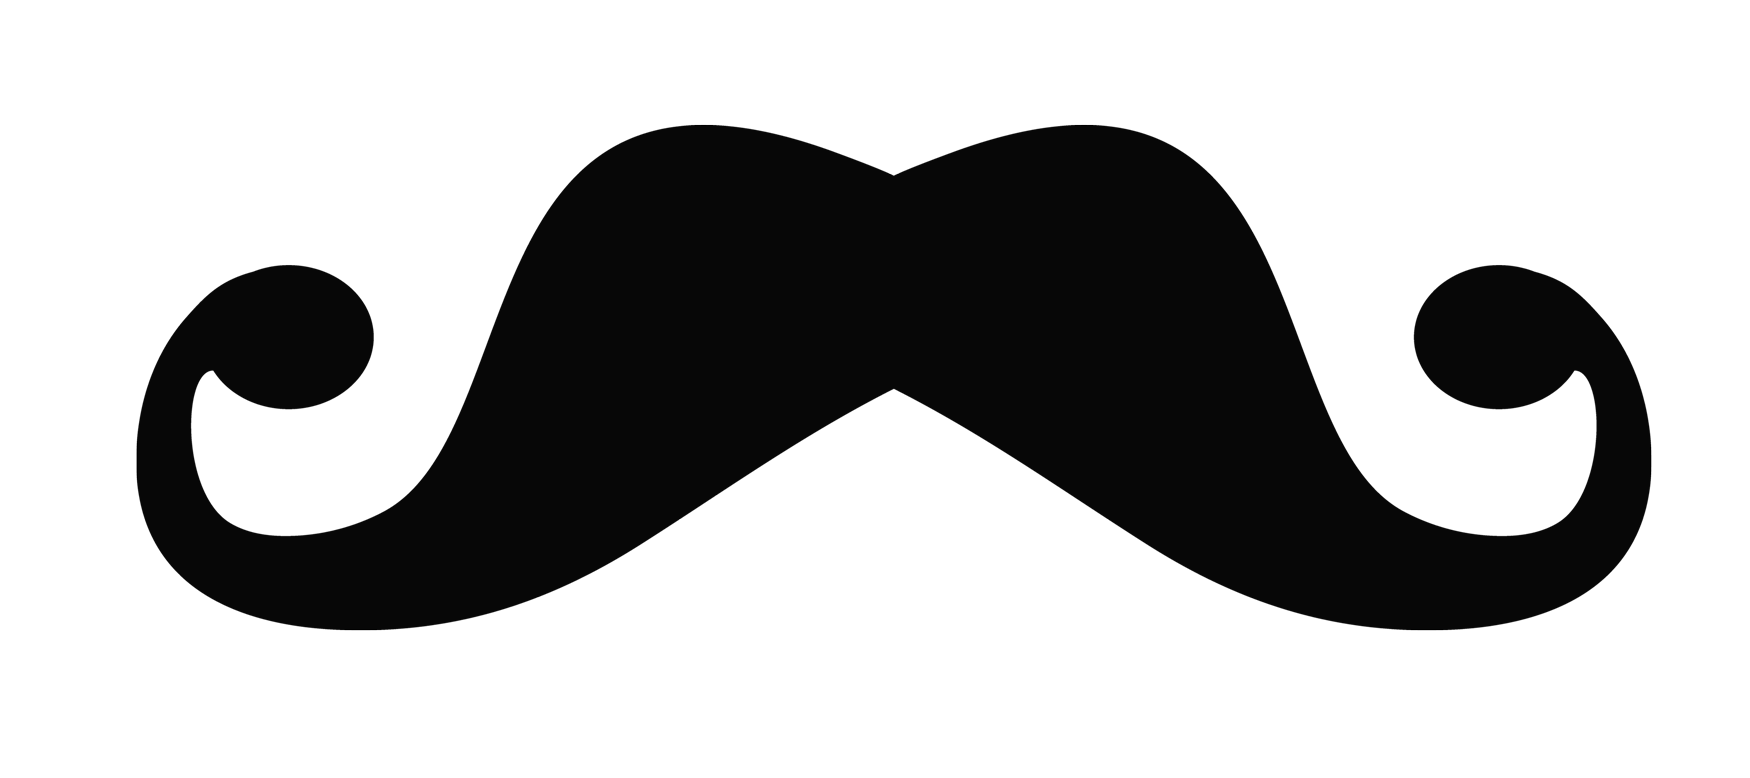 Mustache PNG Images - PngPix